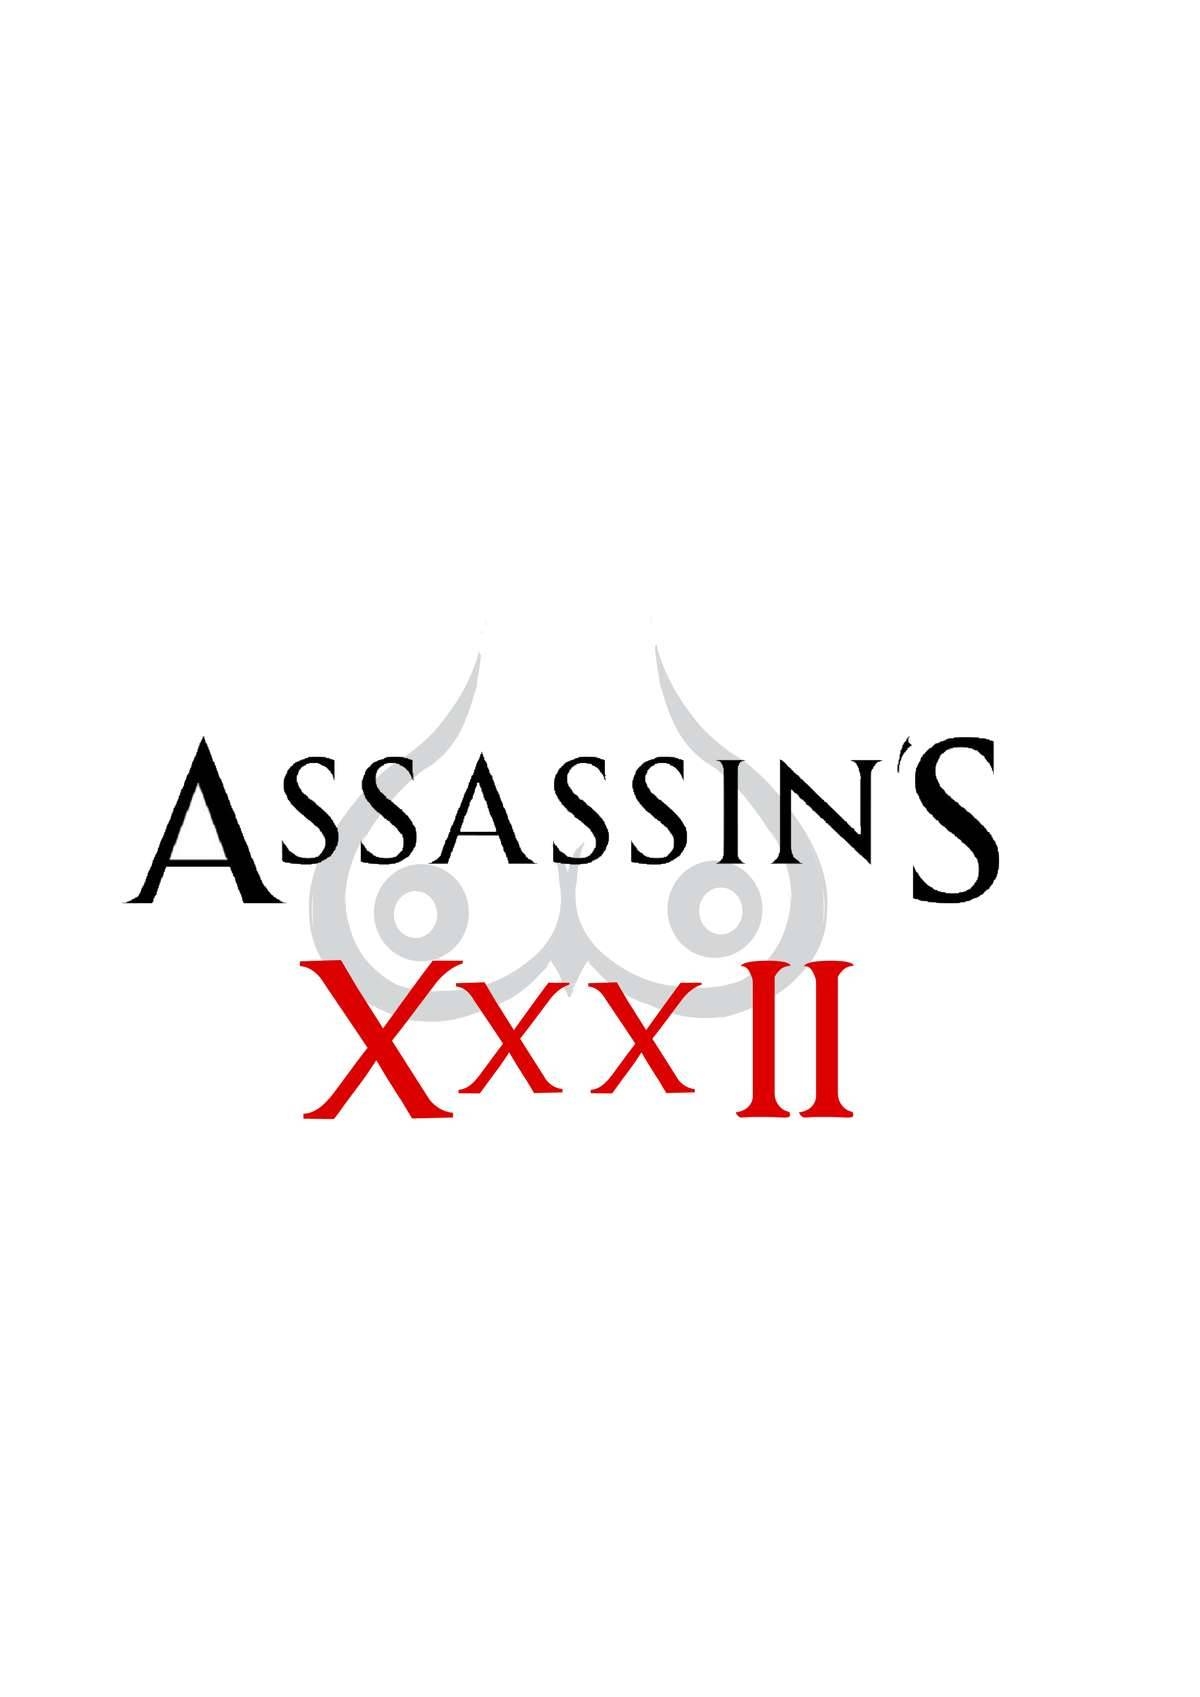 [Torn_S] Assassin's XXX II (Assassin's Creed) [Thai ภาษาไทย] 16